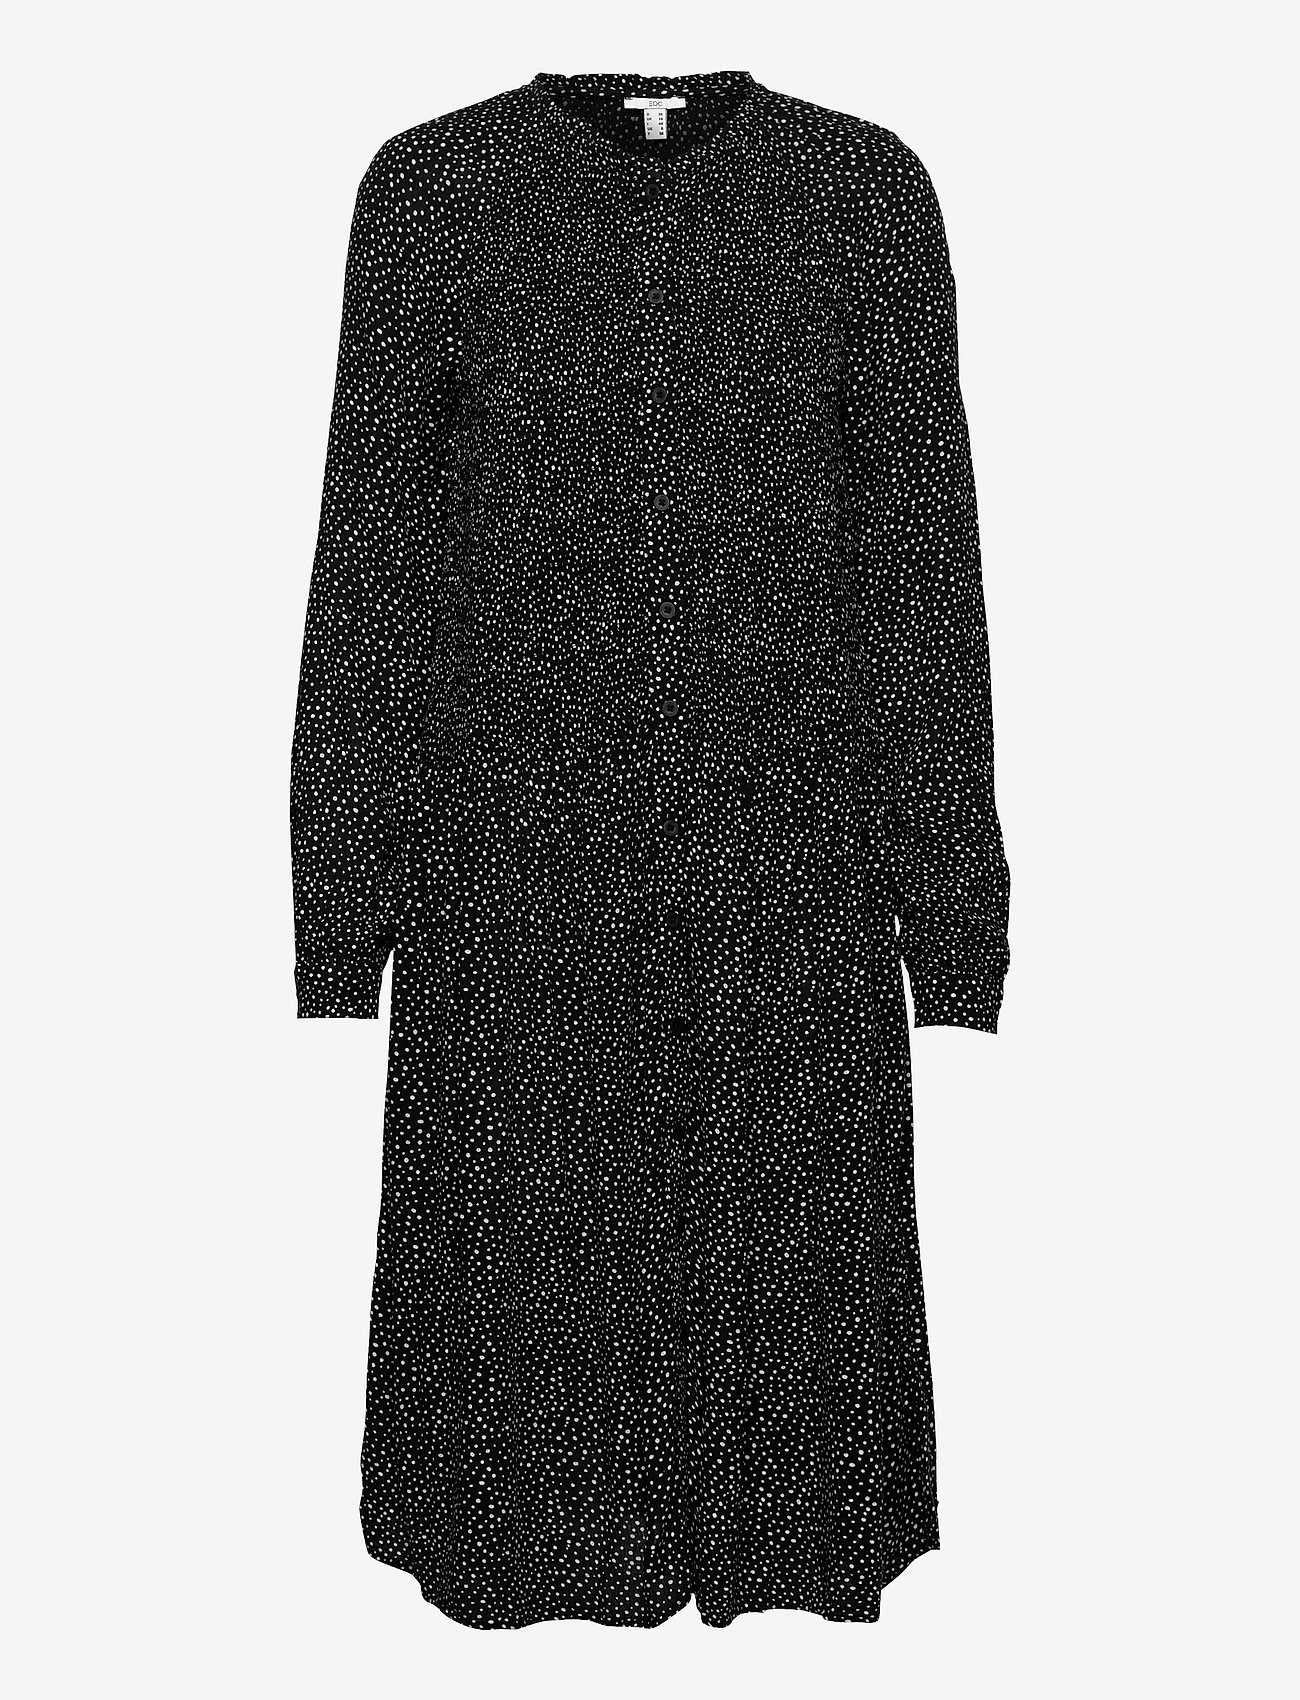 EDC by Esprit - Dresses light woven - midiklänningar - black 3 - 0